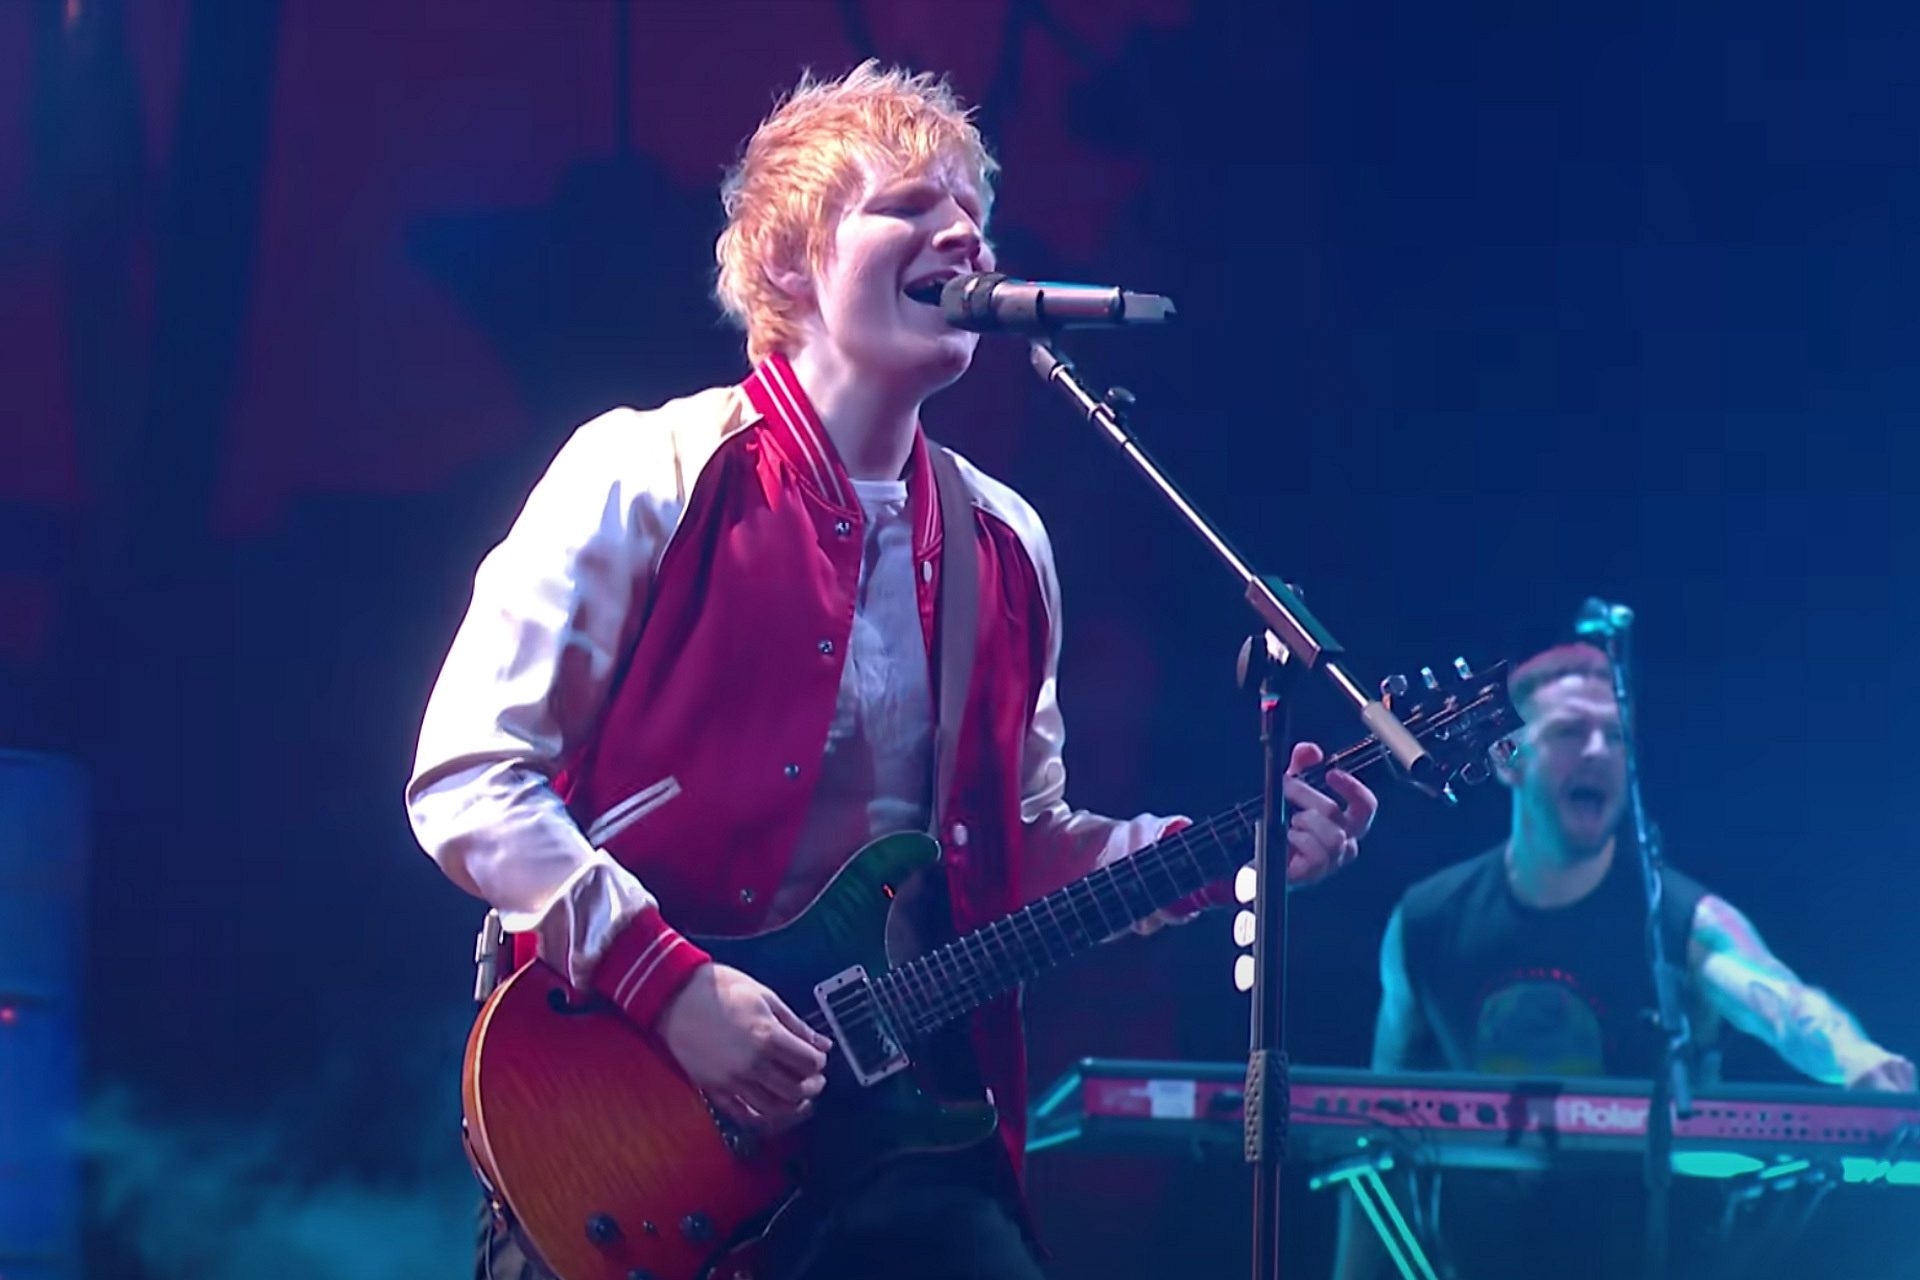 Ed Sheeran and Bring Me The Horizon Perform 'Bad Habits' at 2022 Brit Awards